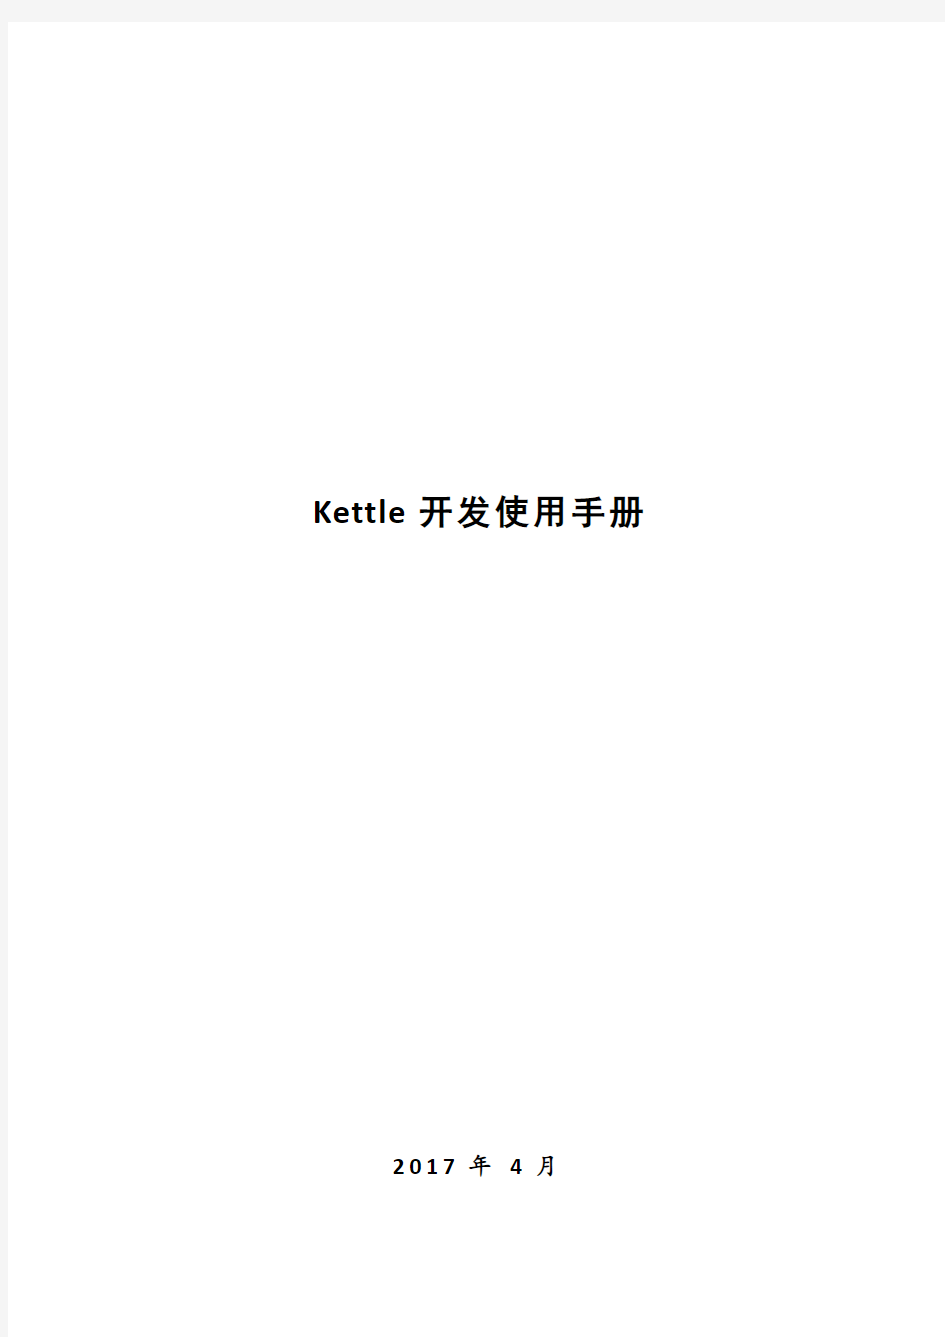 Kettle开发使用手册